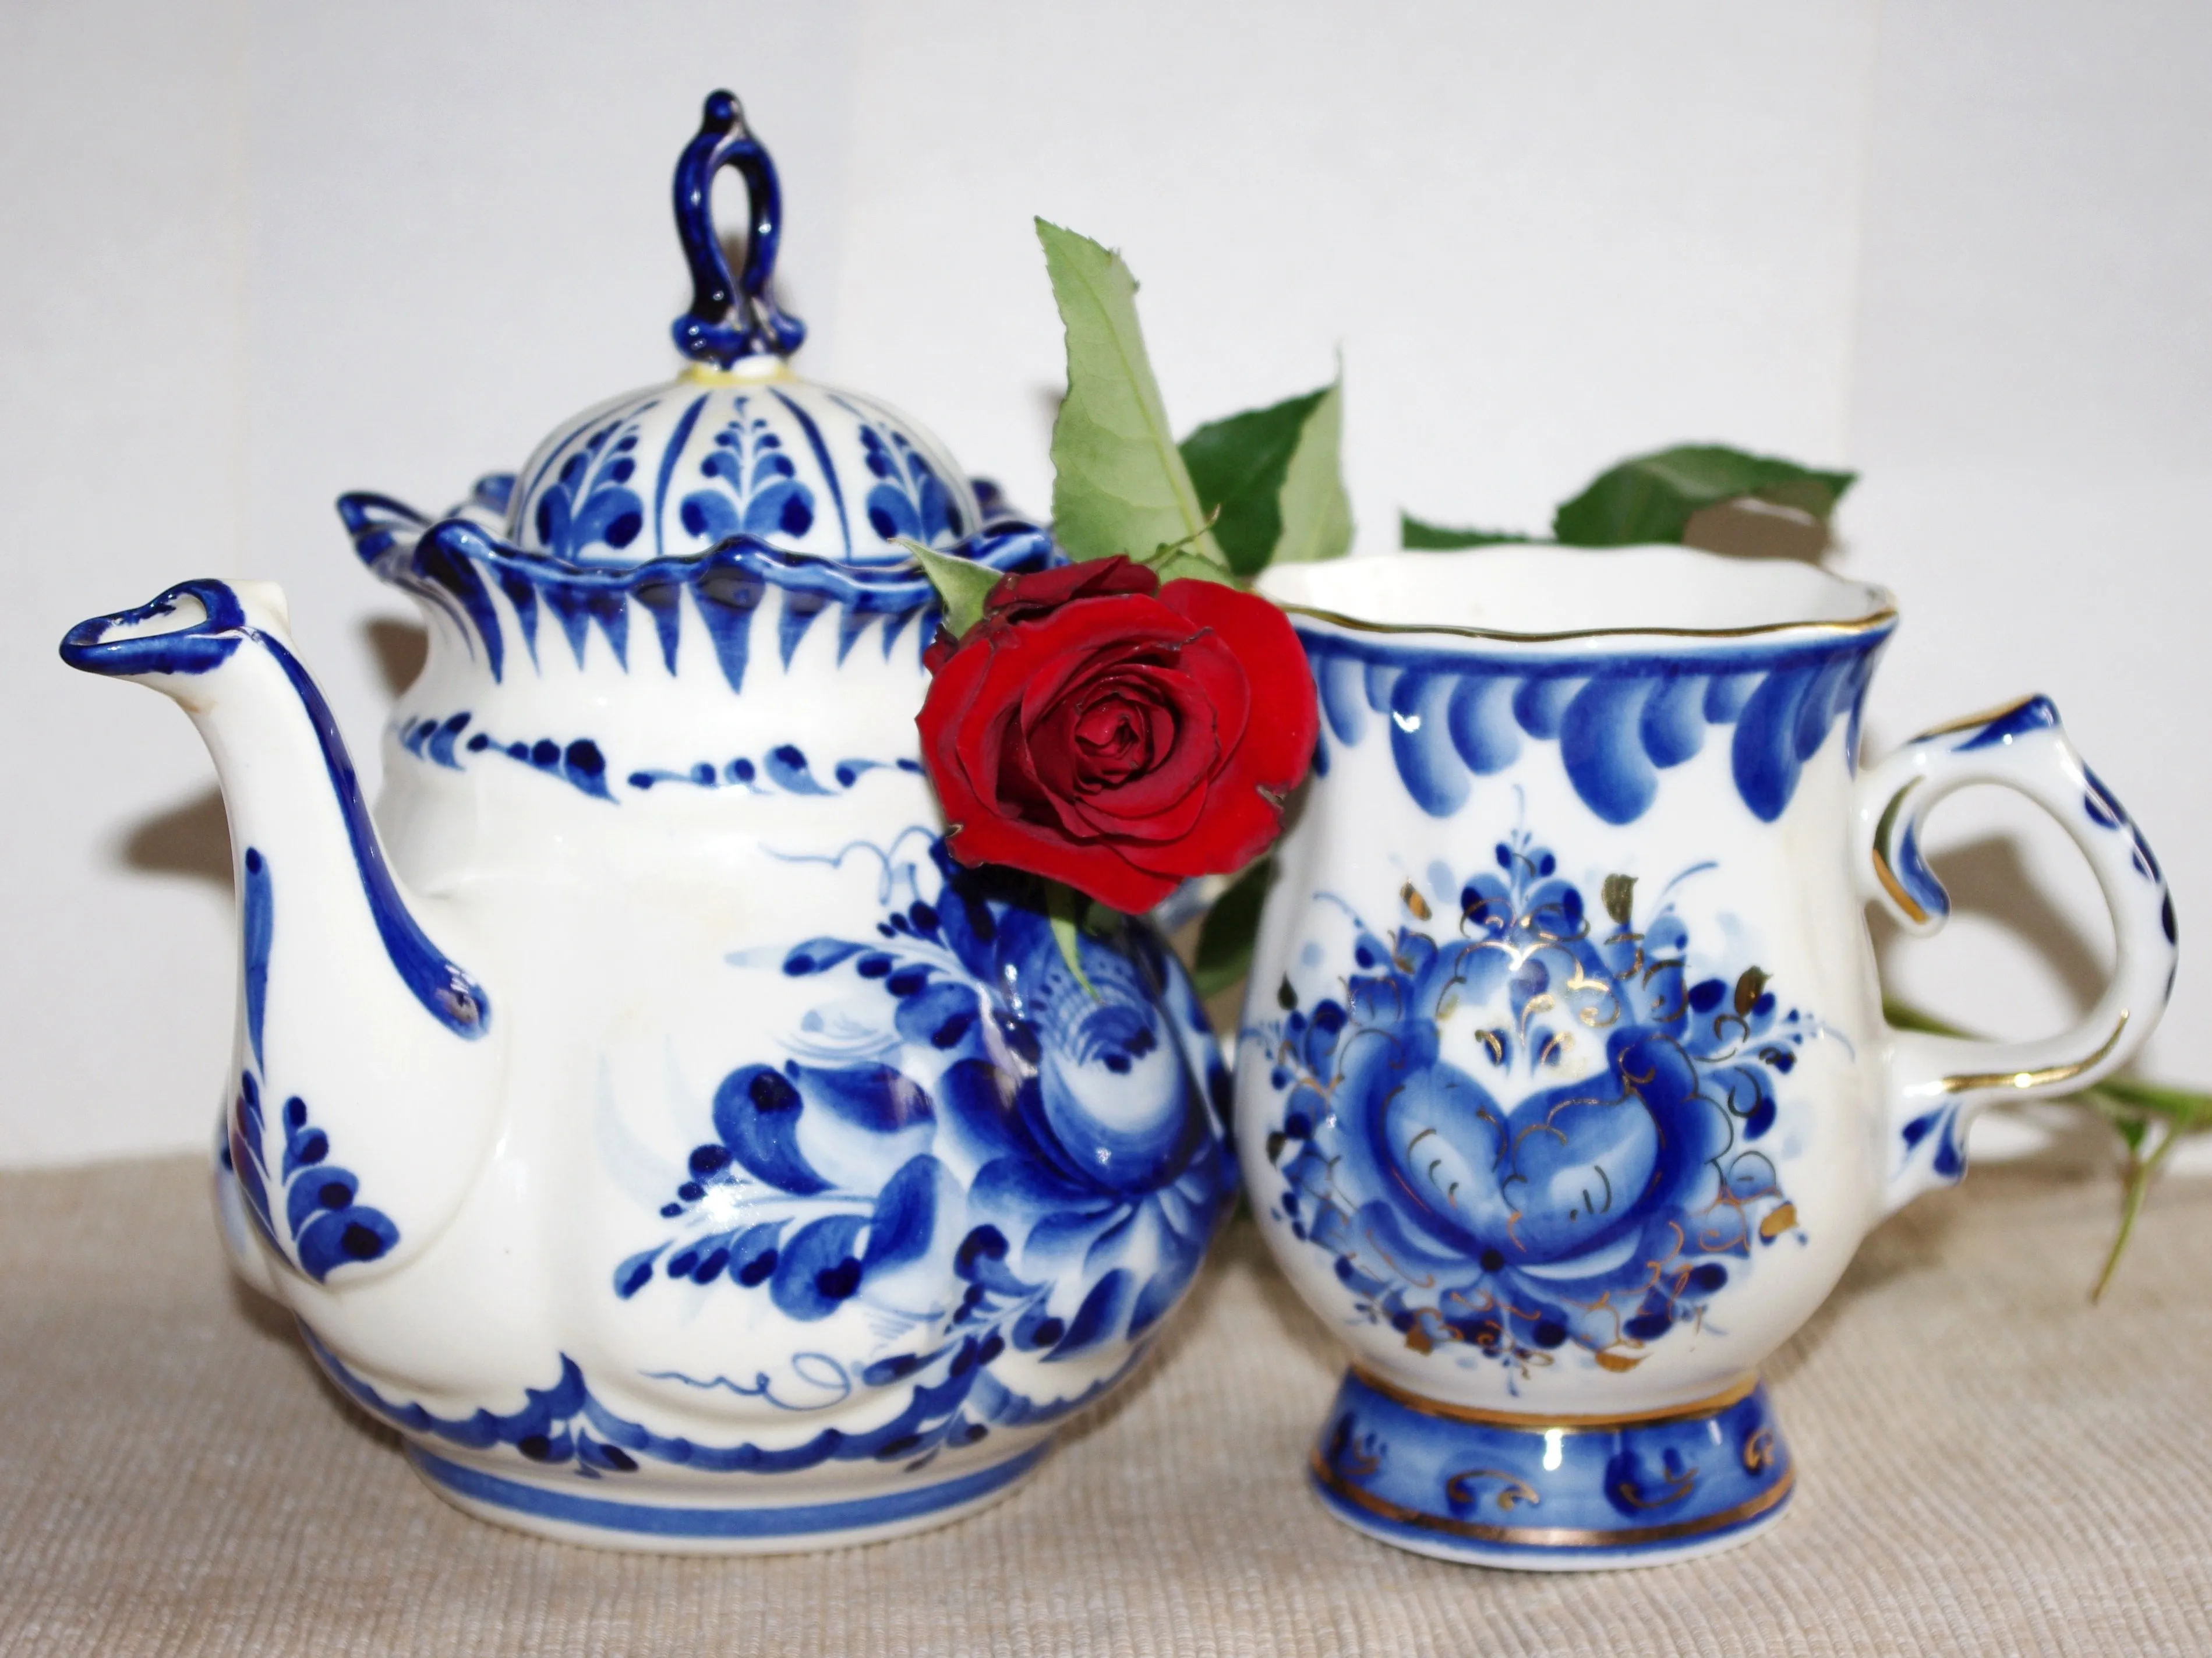 cup rose saucer ceramic blue pottery 780038 pxhere com jpg